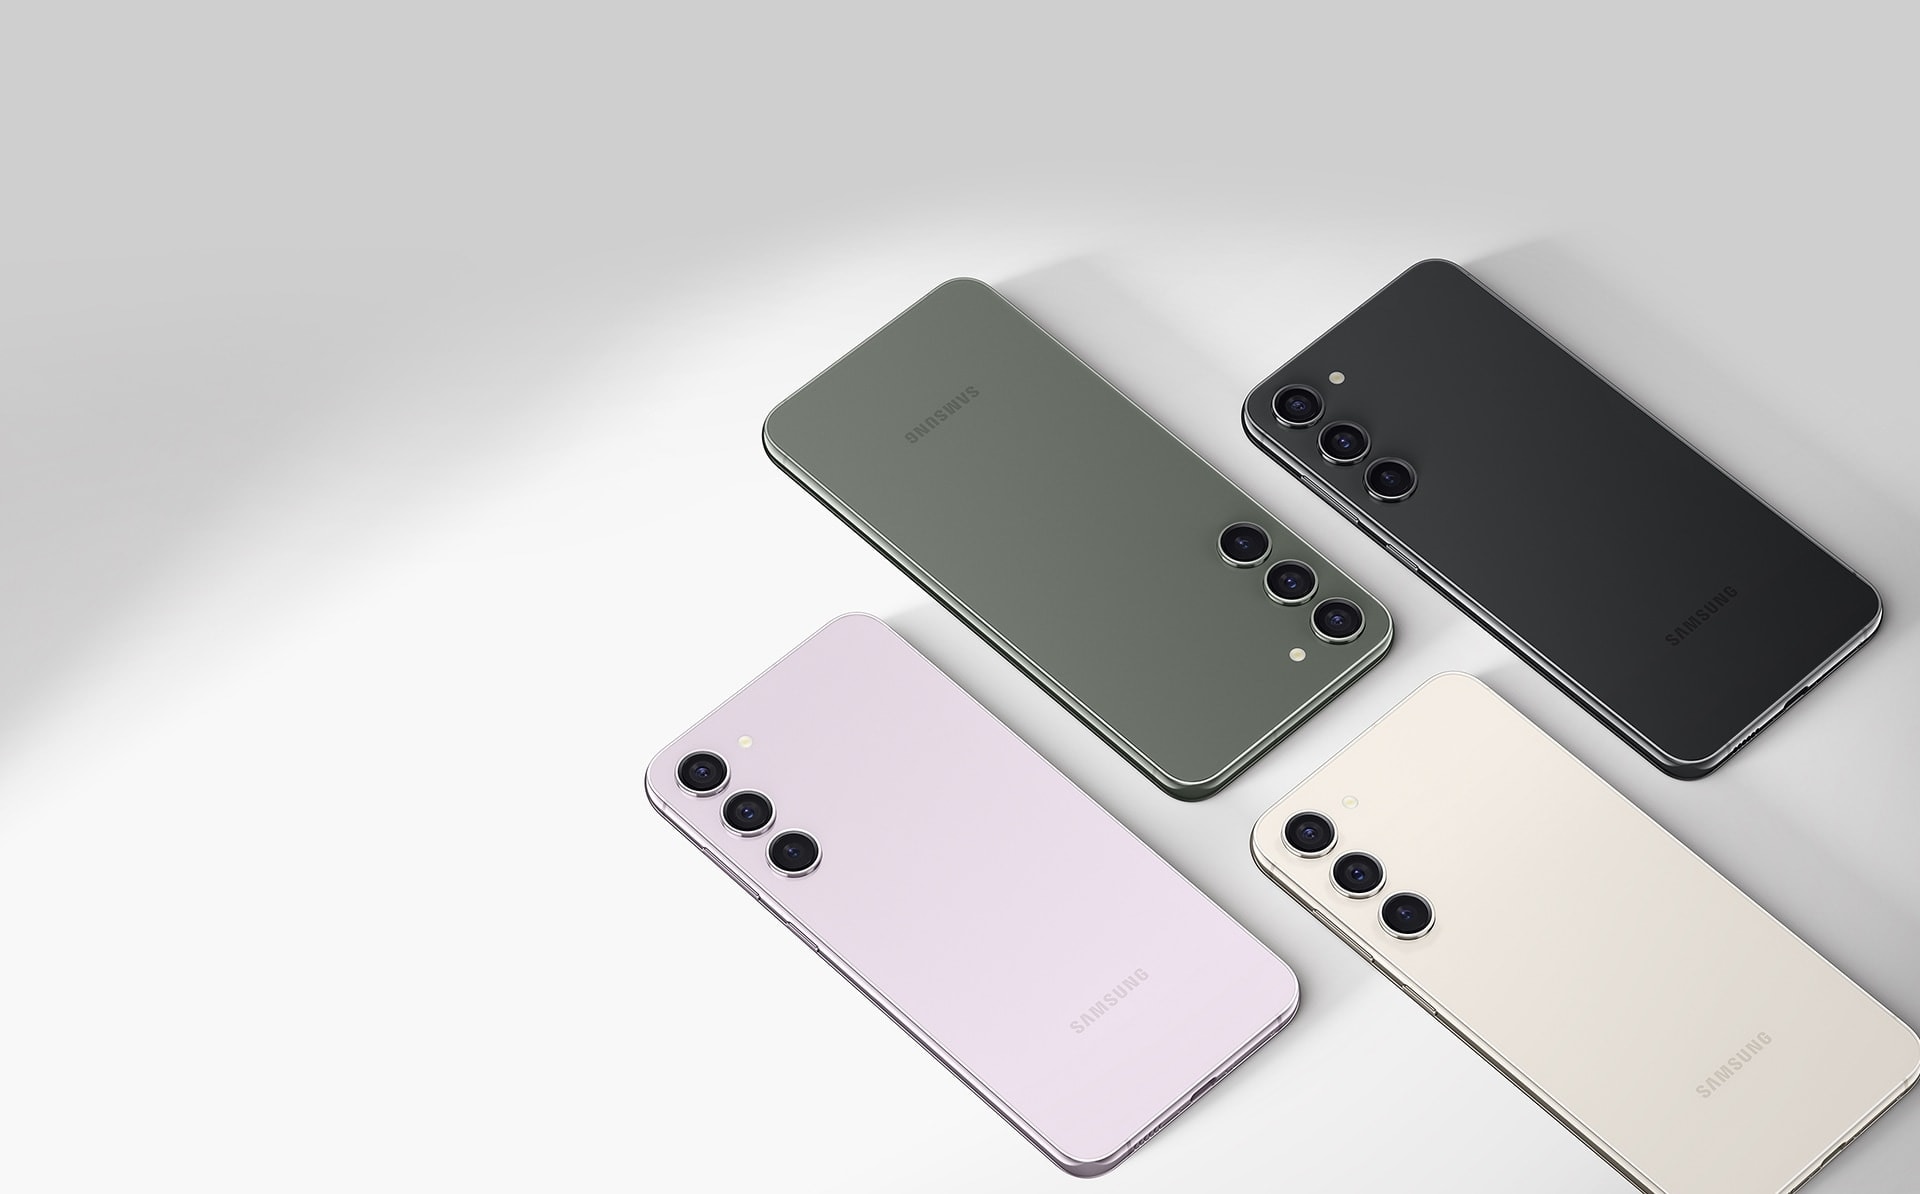 مشهد من أعلى لأربعة هواتف من طراز Galaxy S23 plus. وكل هاتف بلون مختلف: لافندر وأخضر وكريمي وأسود خافت.
                            